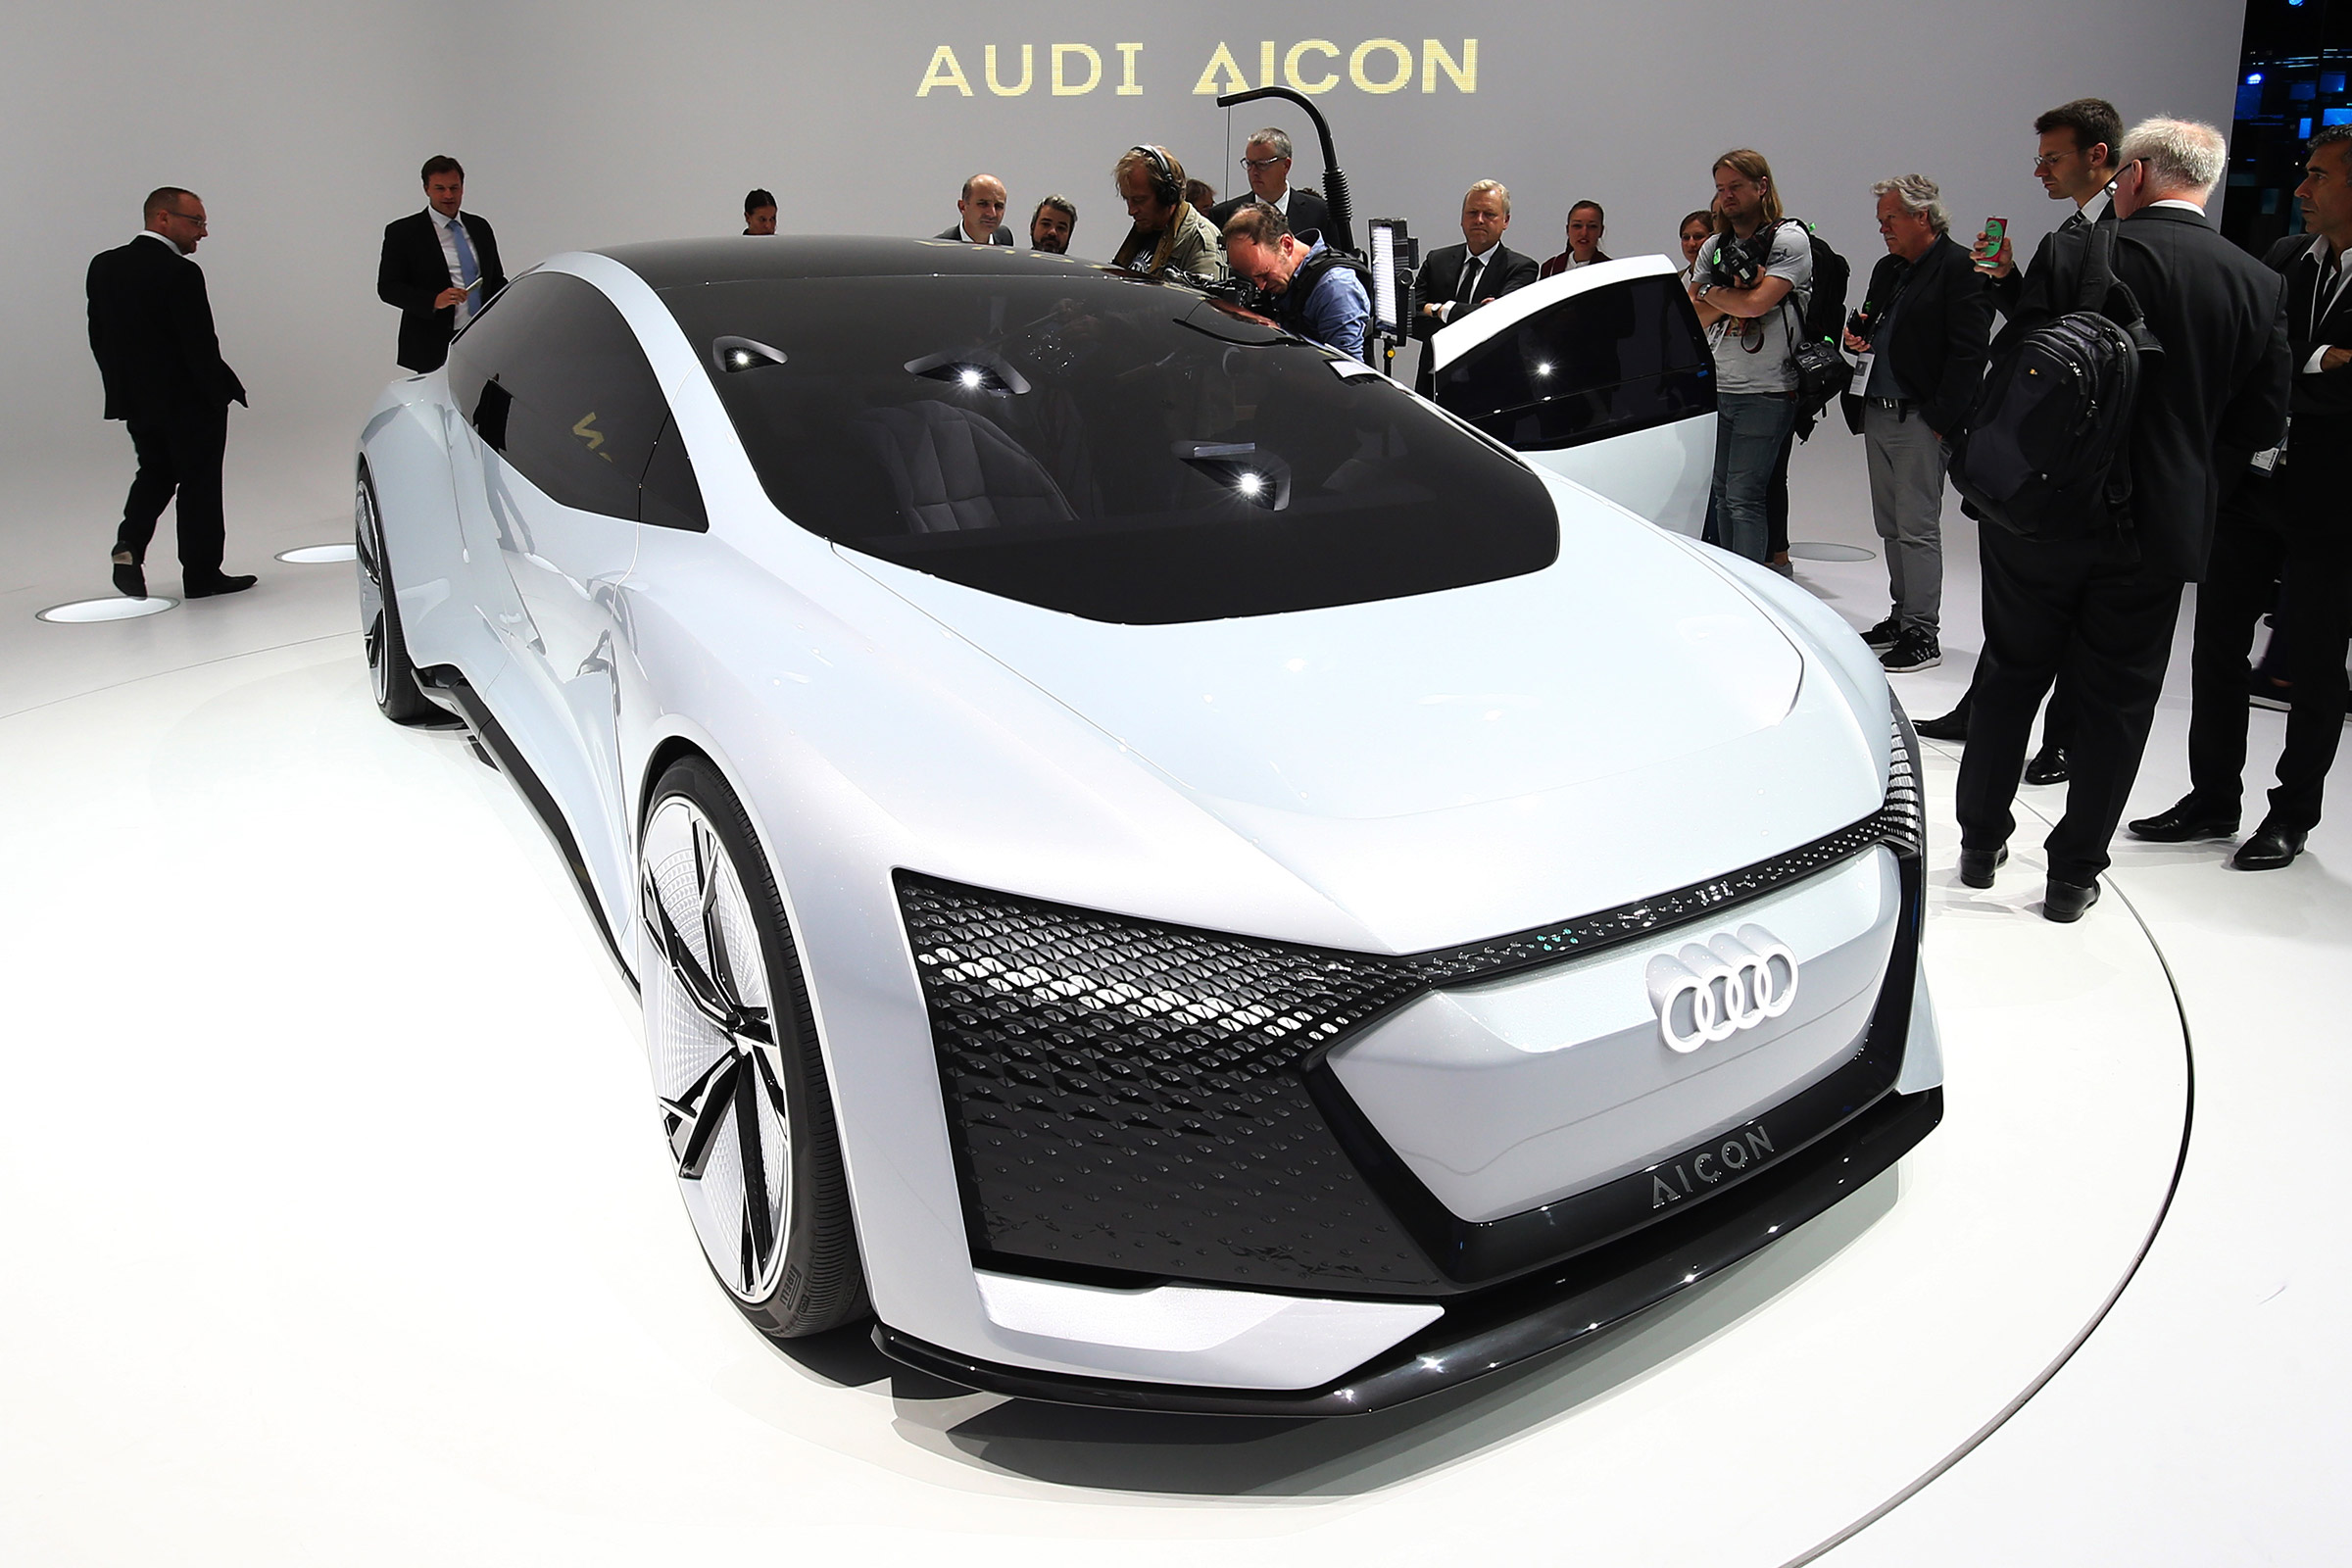 Audi Aicon autonomous pilot fleet to launch in 2021 Auto Express